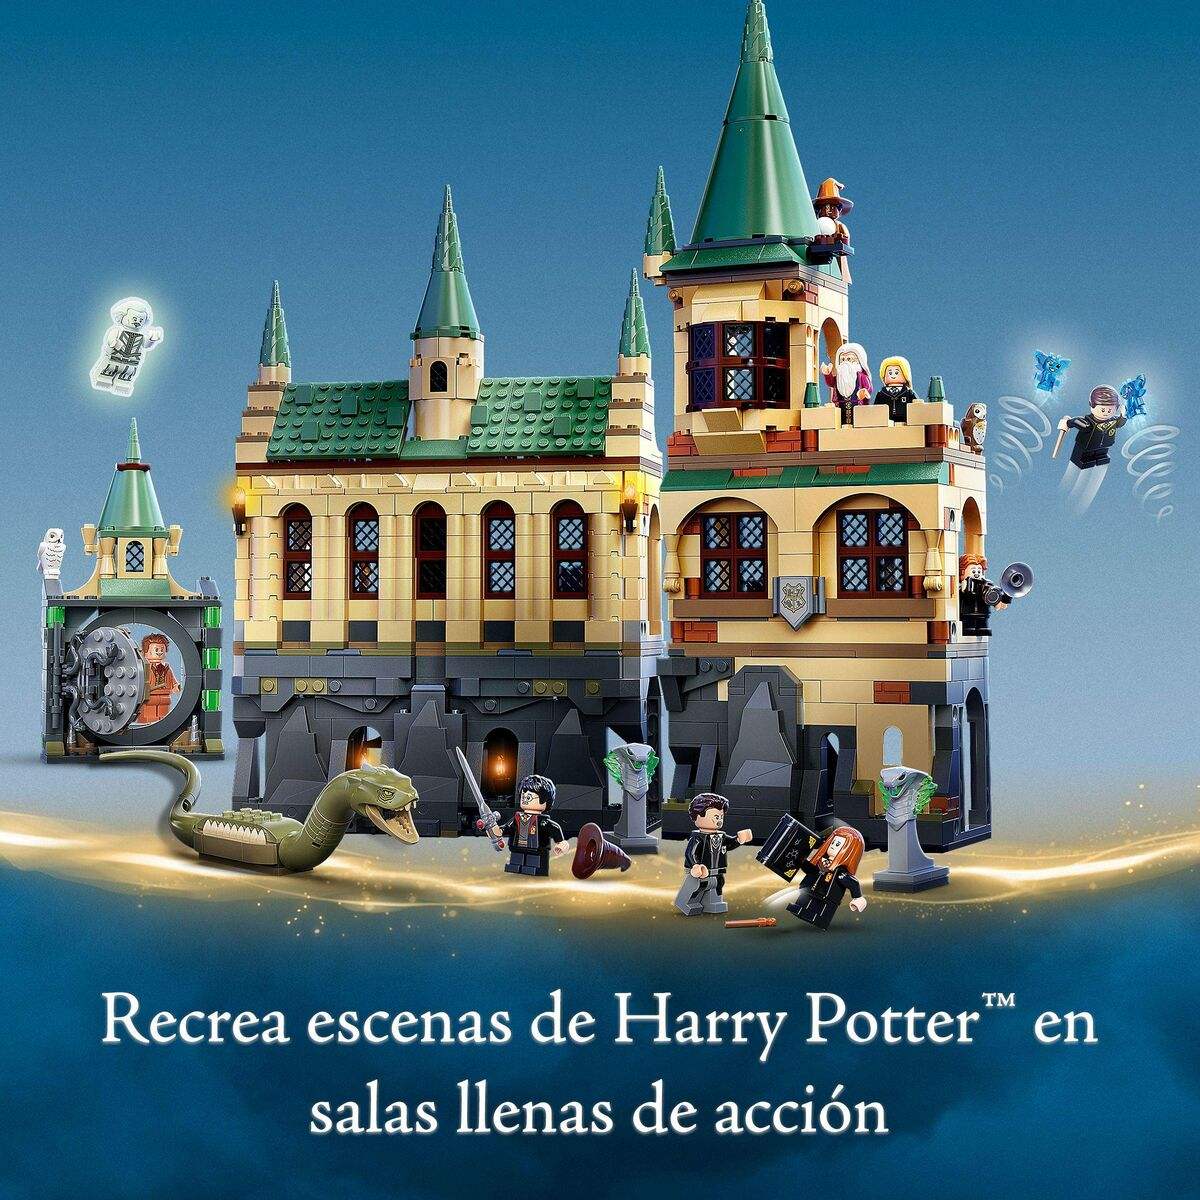 Lot Lego Harry Potter ™ Hogwarts Chamber of Secrets - Lego - Jardin D'Eyden - jardindeyden.fr